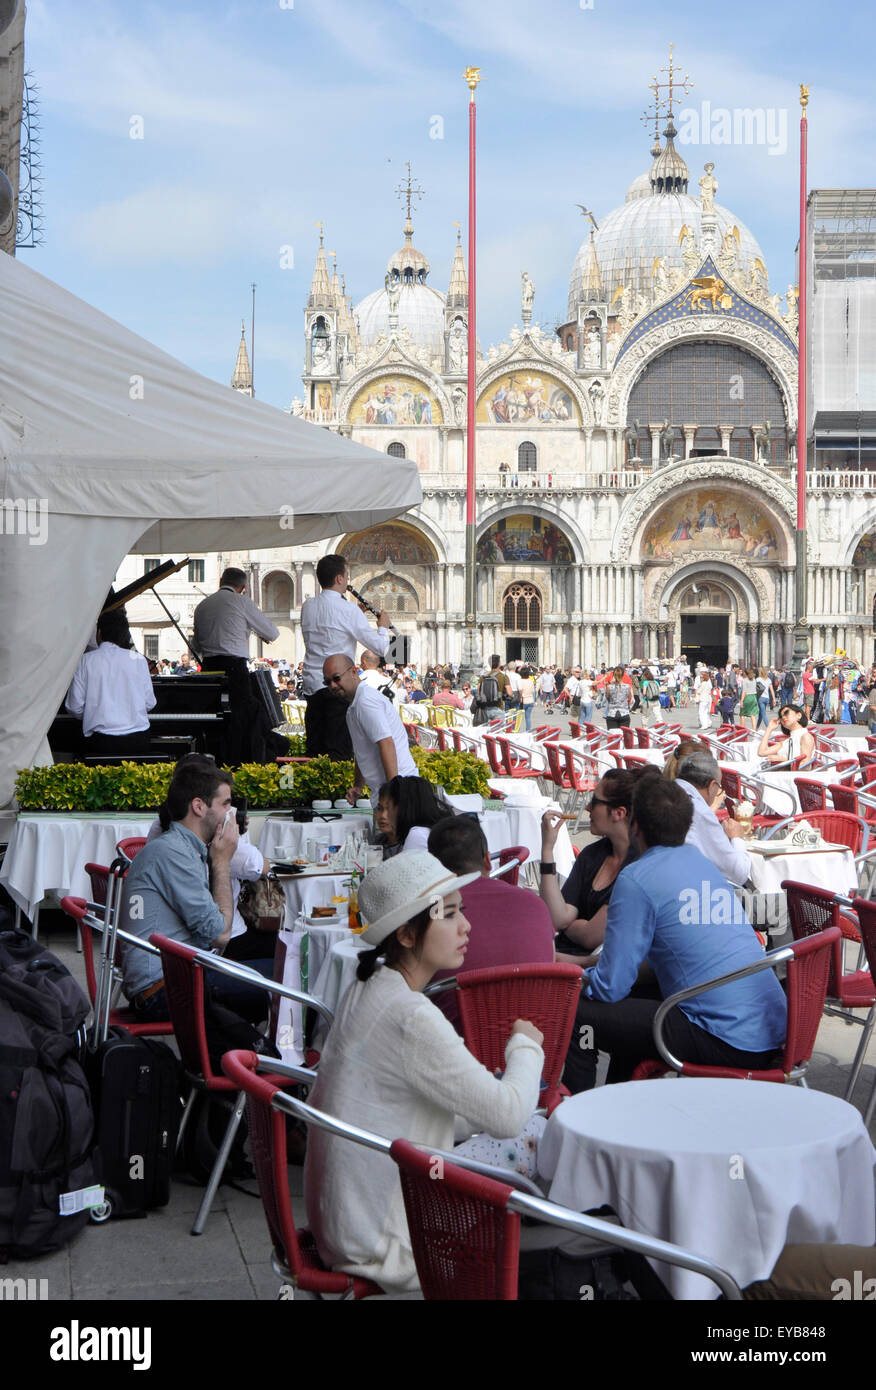 Italia - Venezia - Piazza San Marco - le donne da solo al tavolo del bar - in attesa - sfondo occupato cafè - orchestra - San Marco facciata Foto Stock